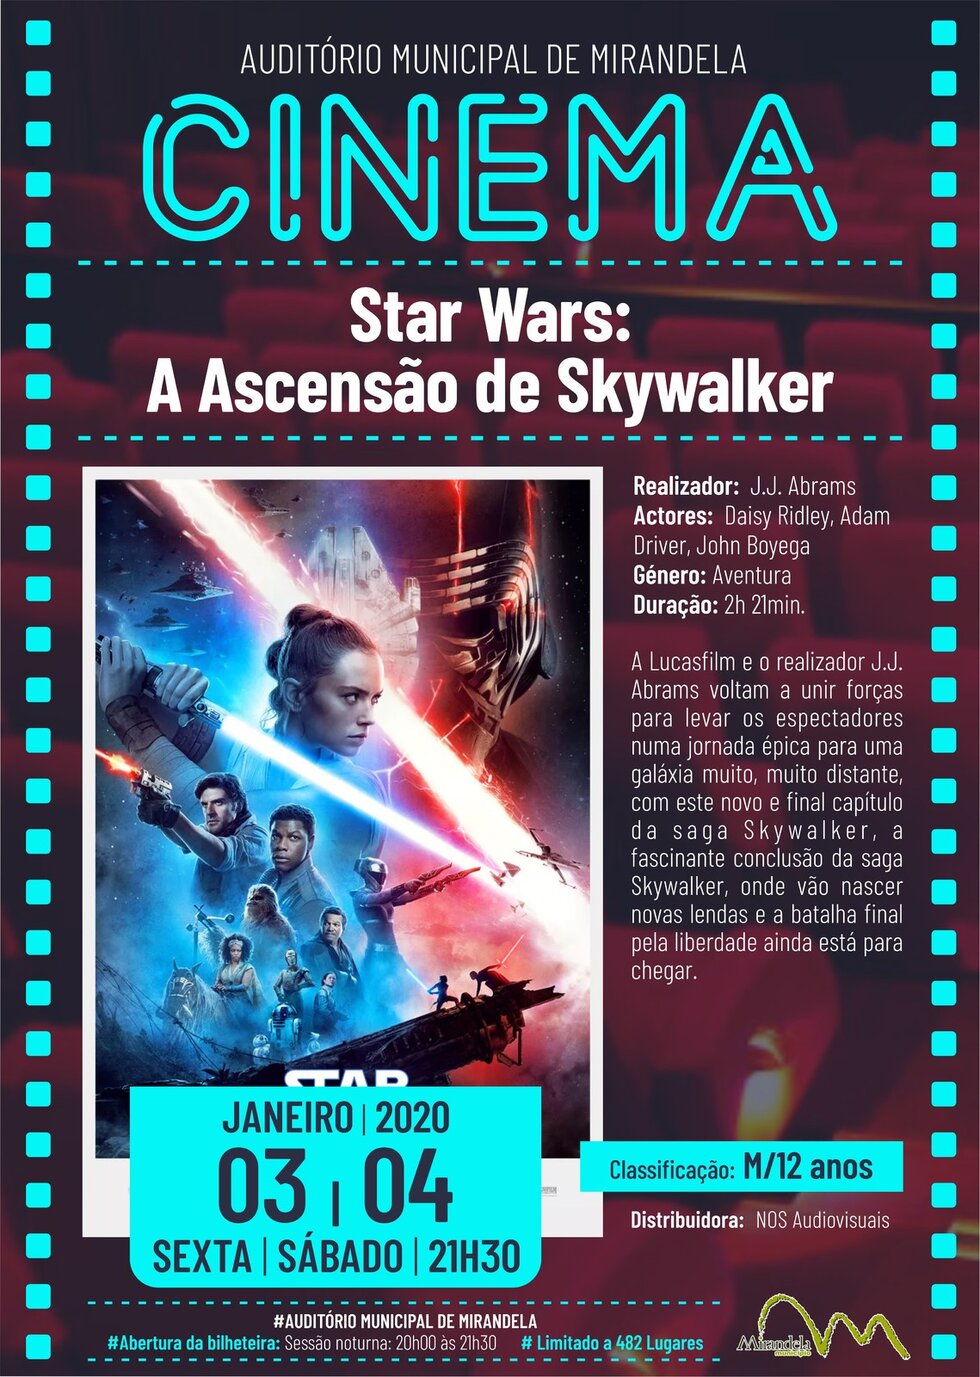 cartaz_filme_star_wars_a_ascensao_de_skywalker